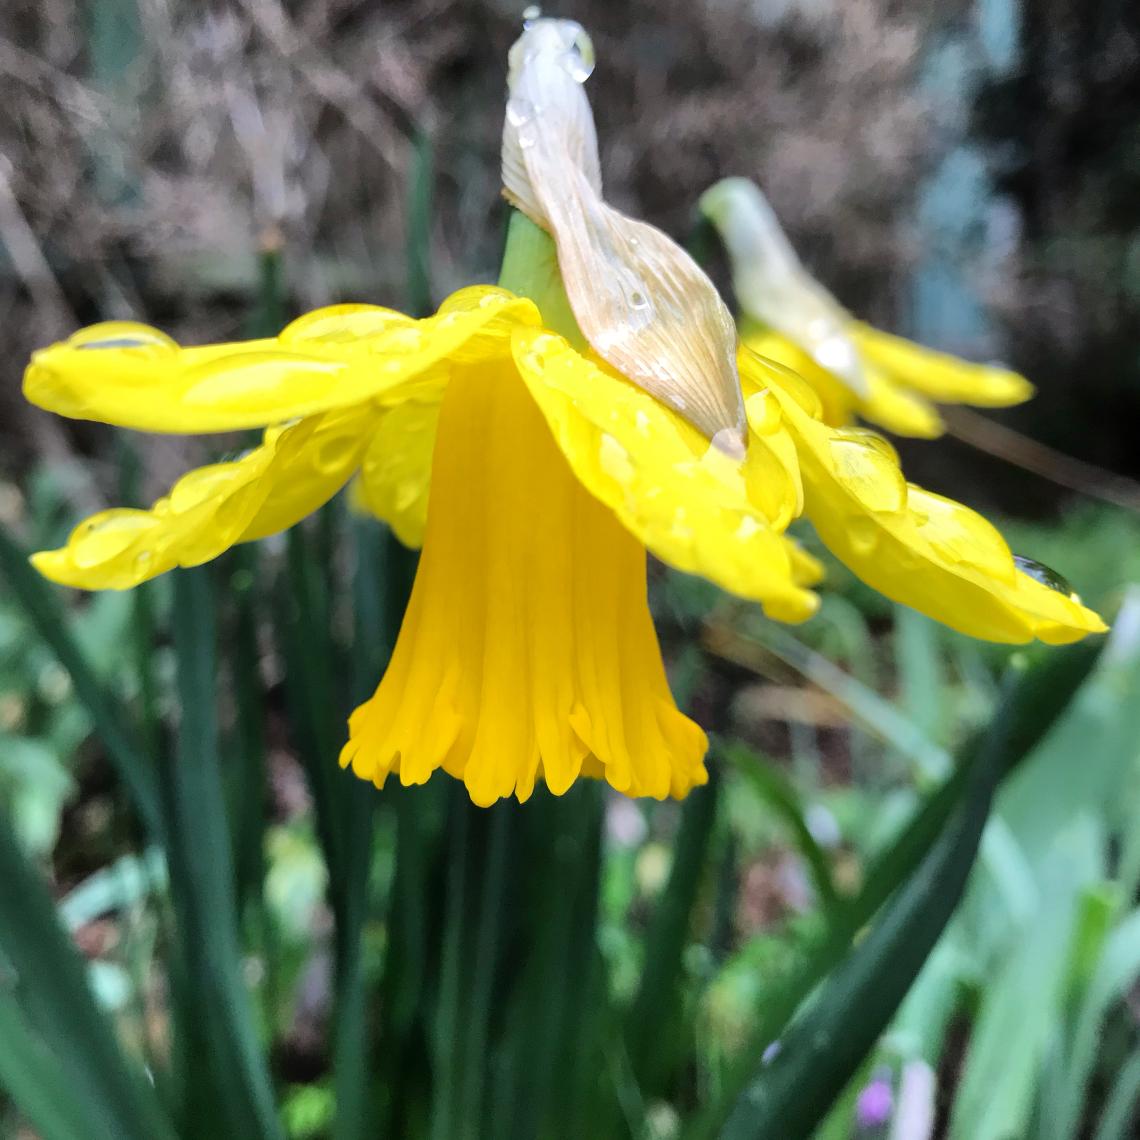 Narcissus bloom Milner Gardens & Woodland